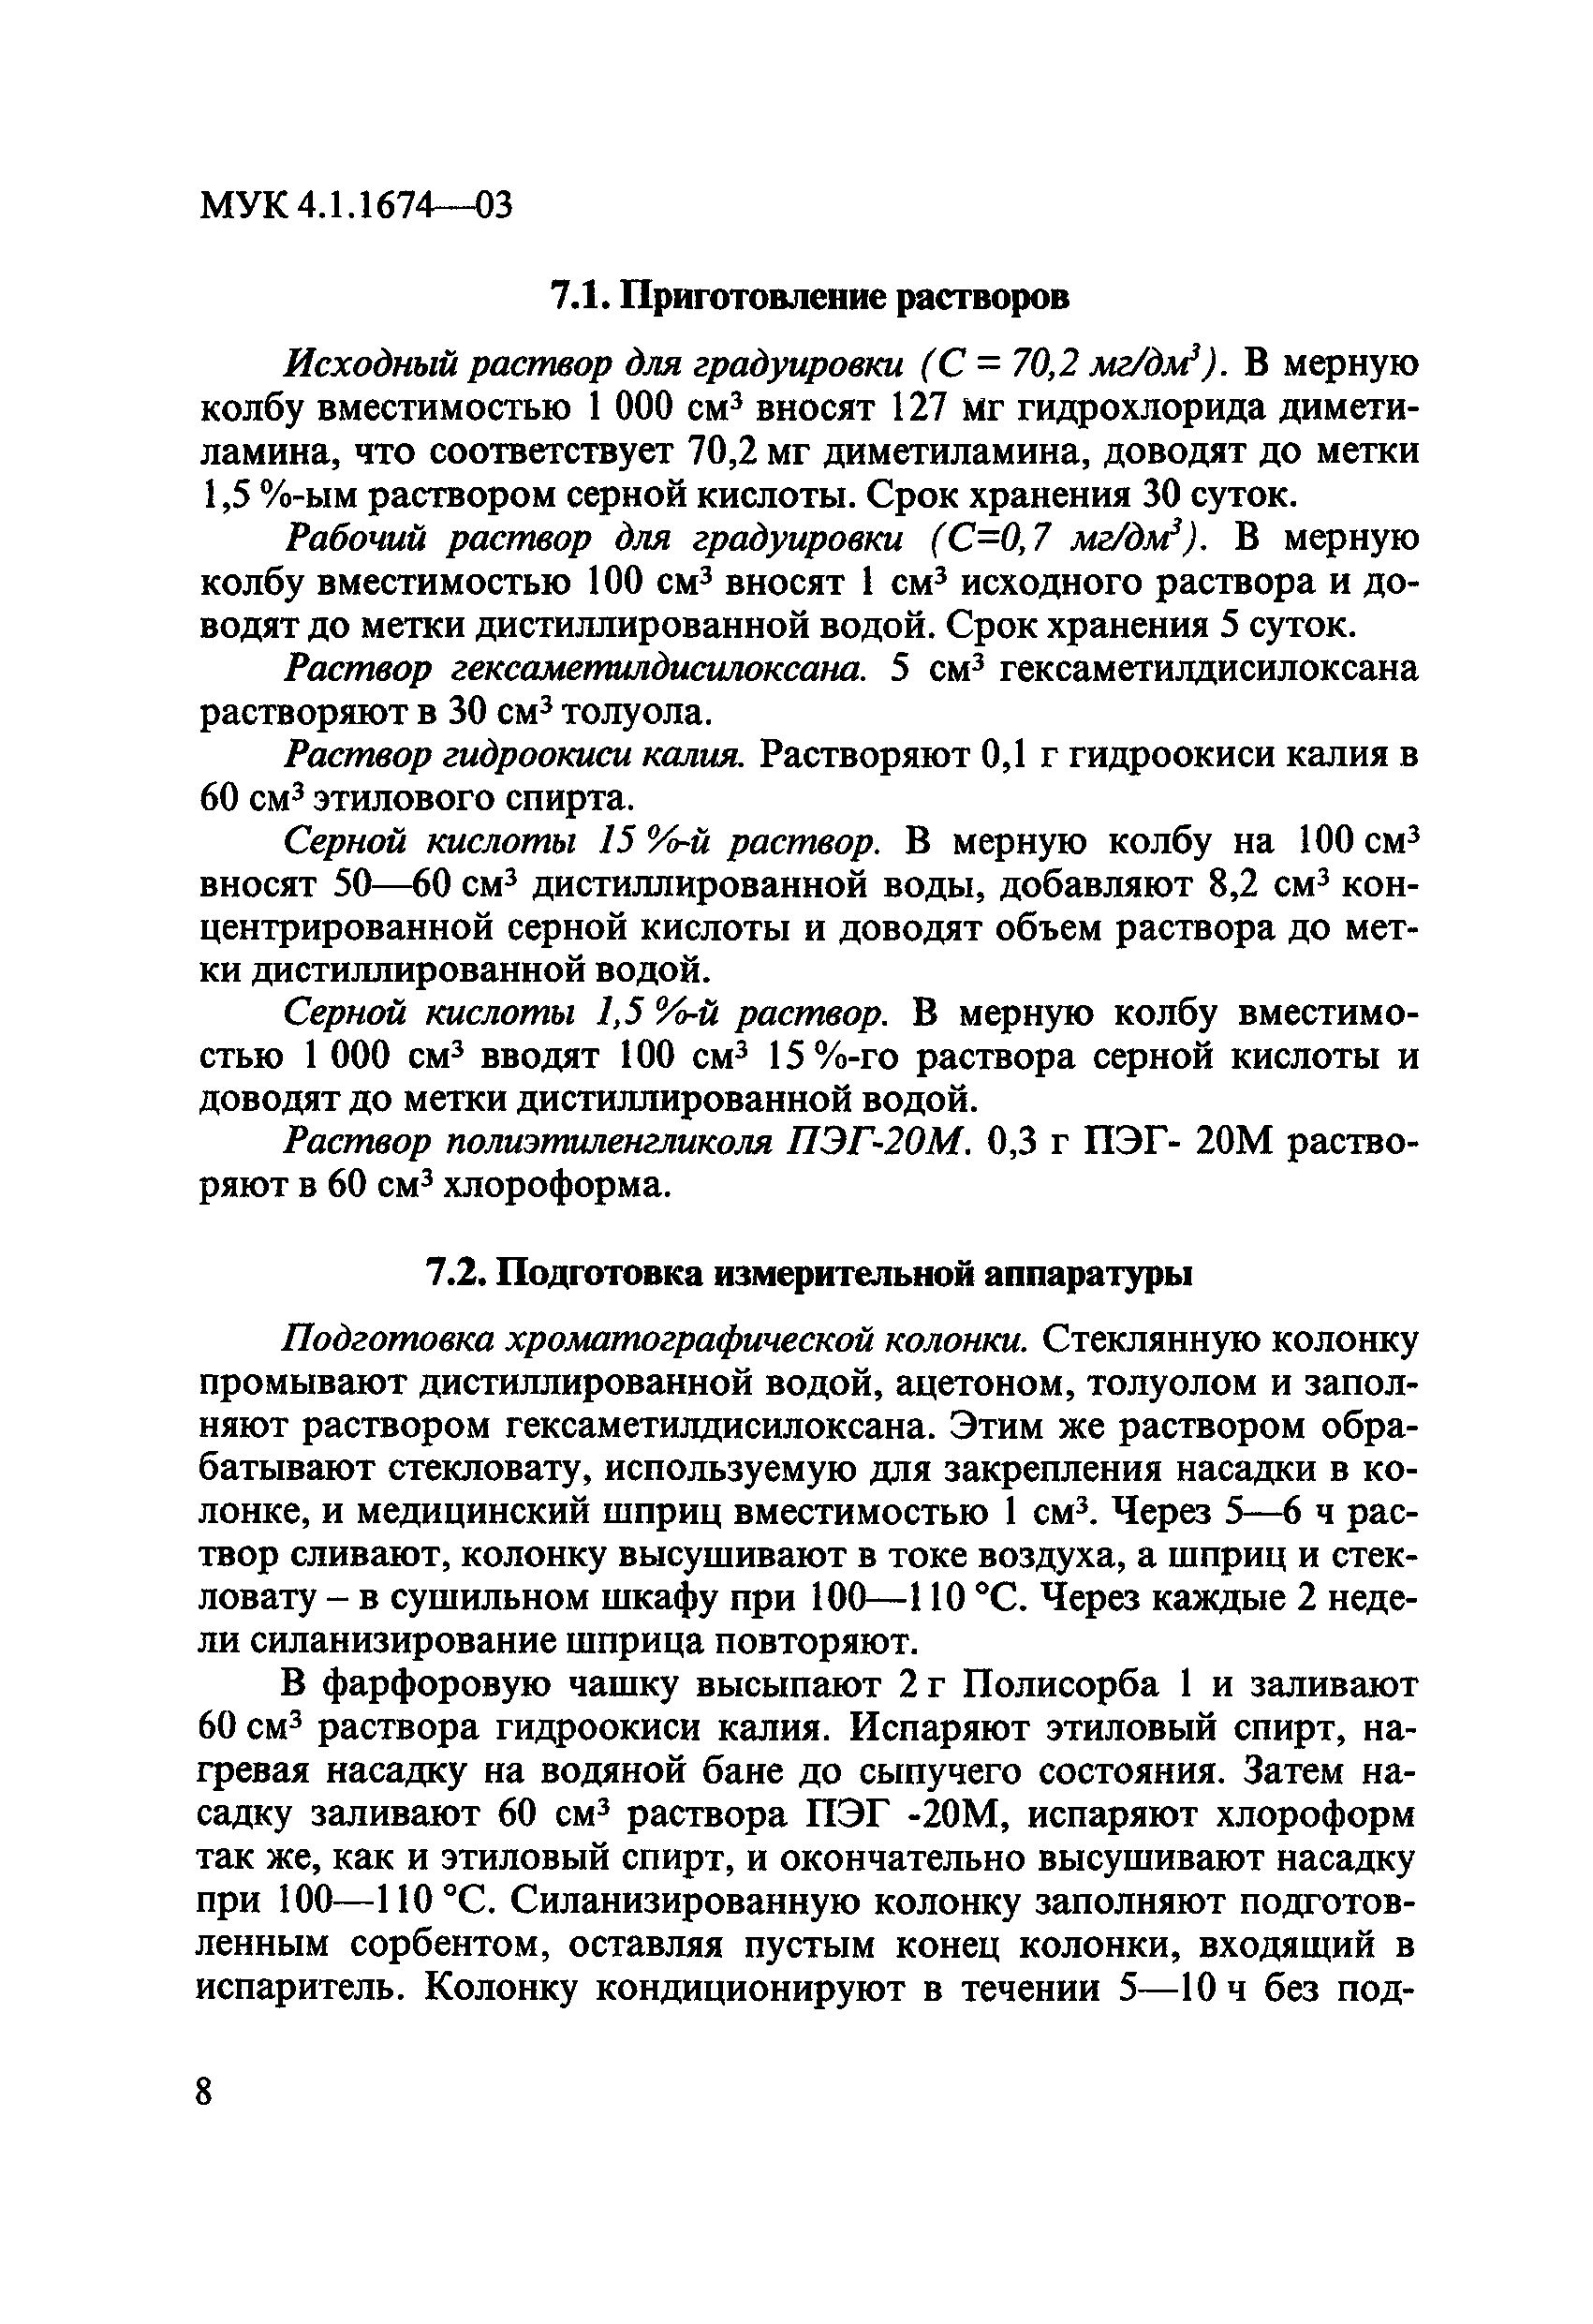 МУК 4.1.1674-03